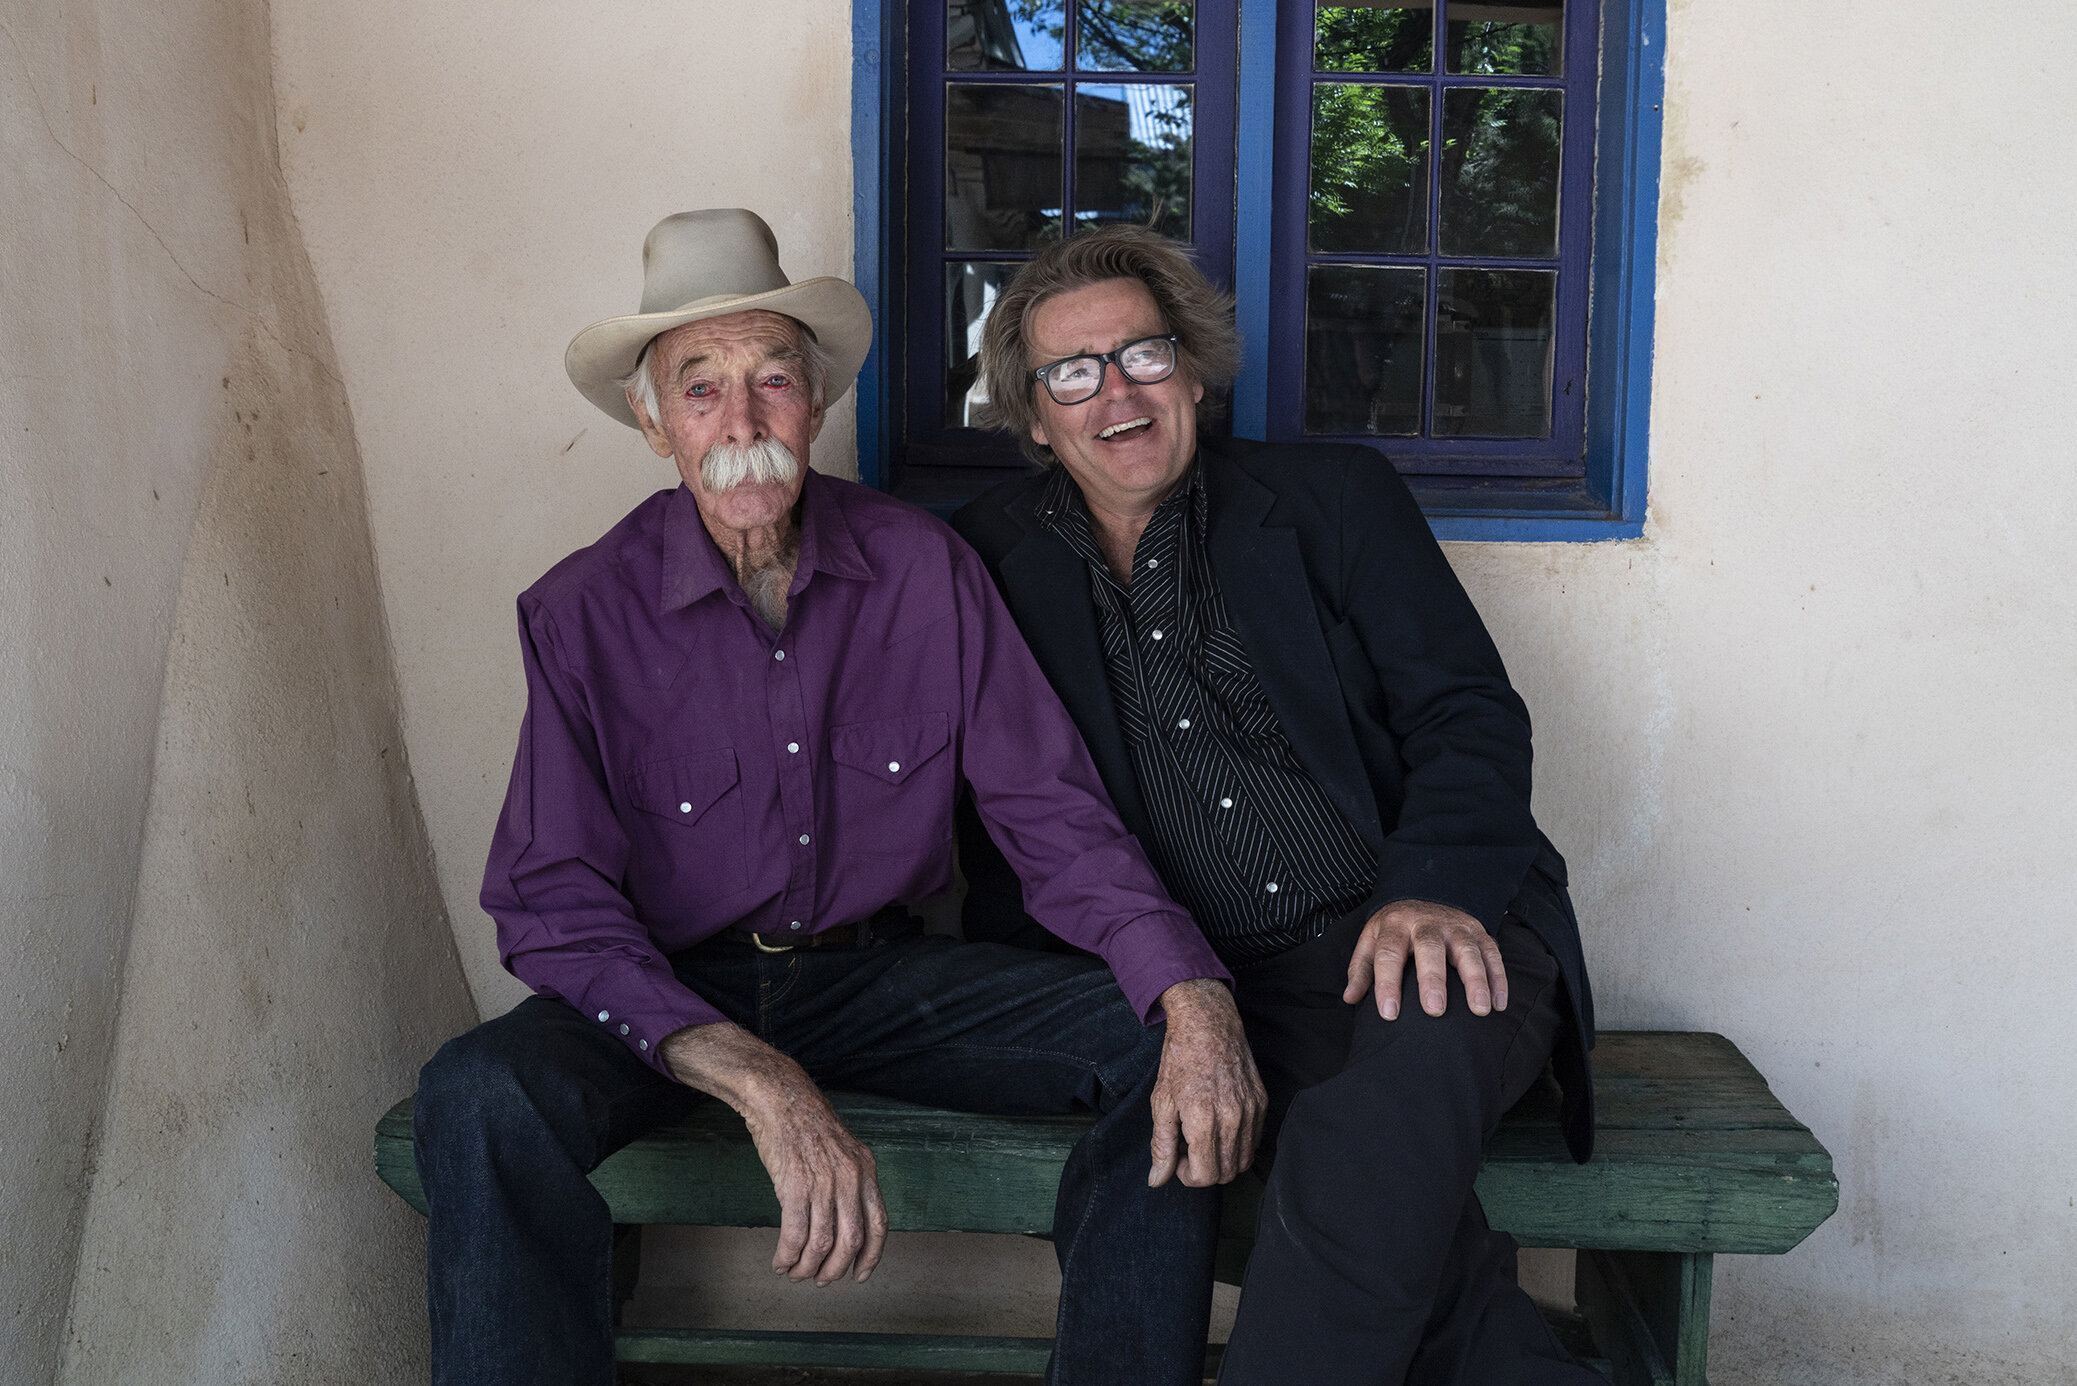  Joe and Archie West, Santa Fe, New Mexico 